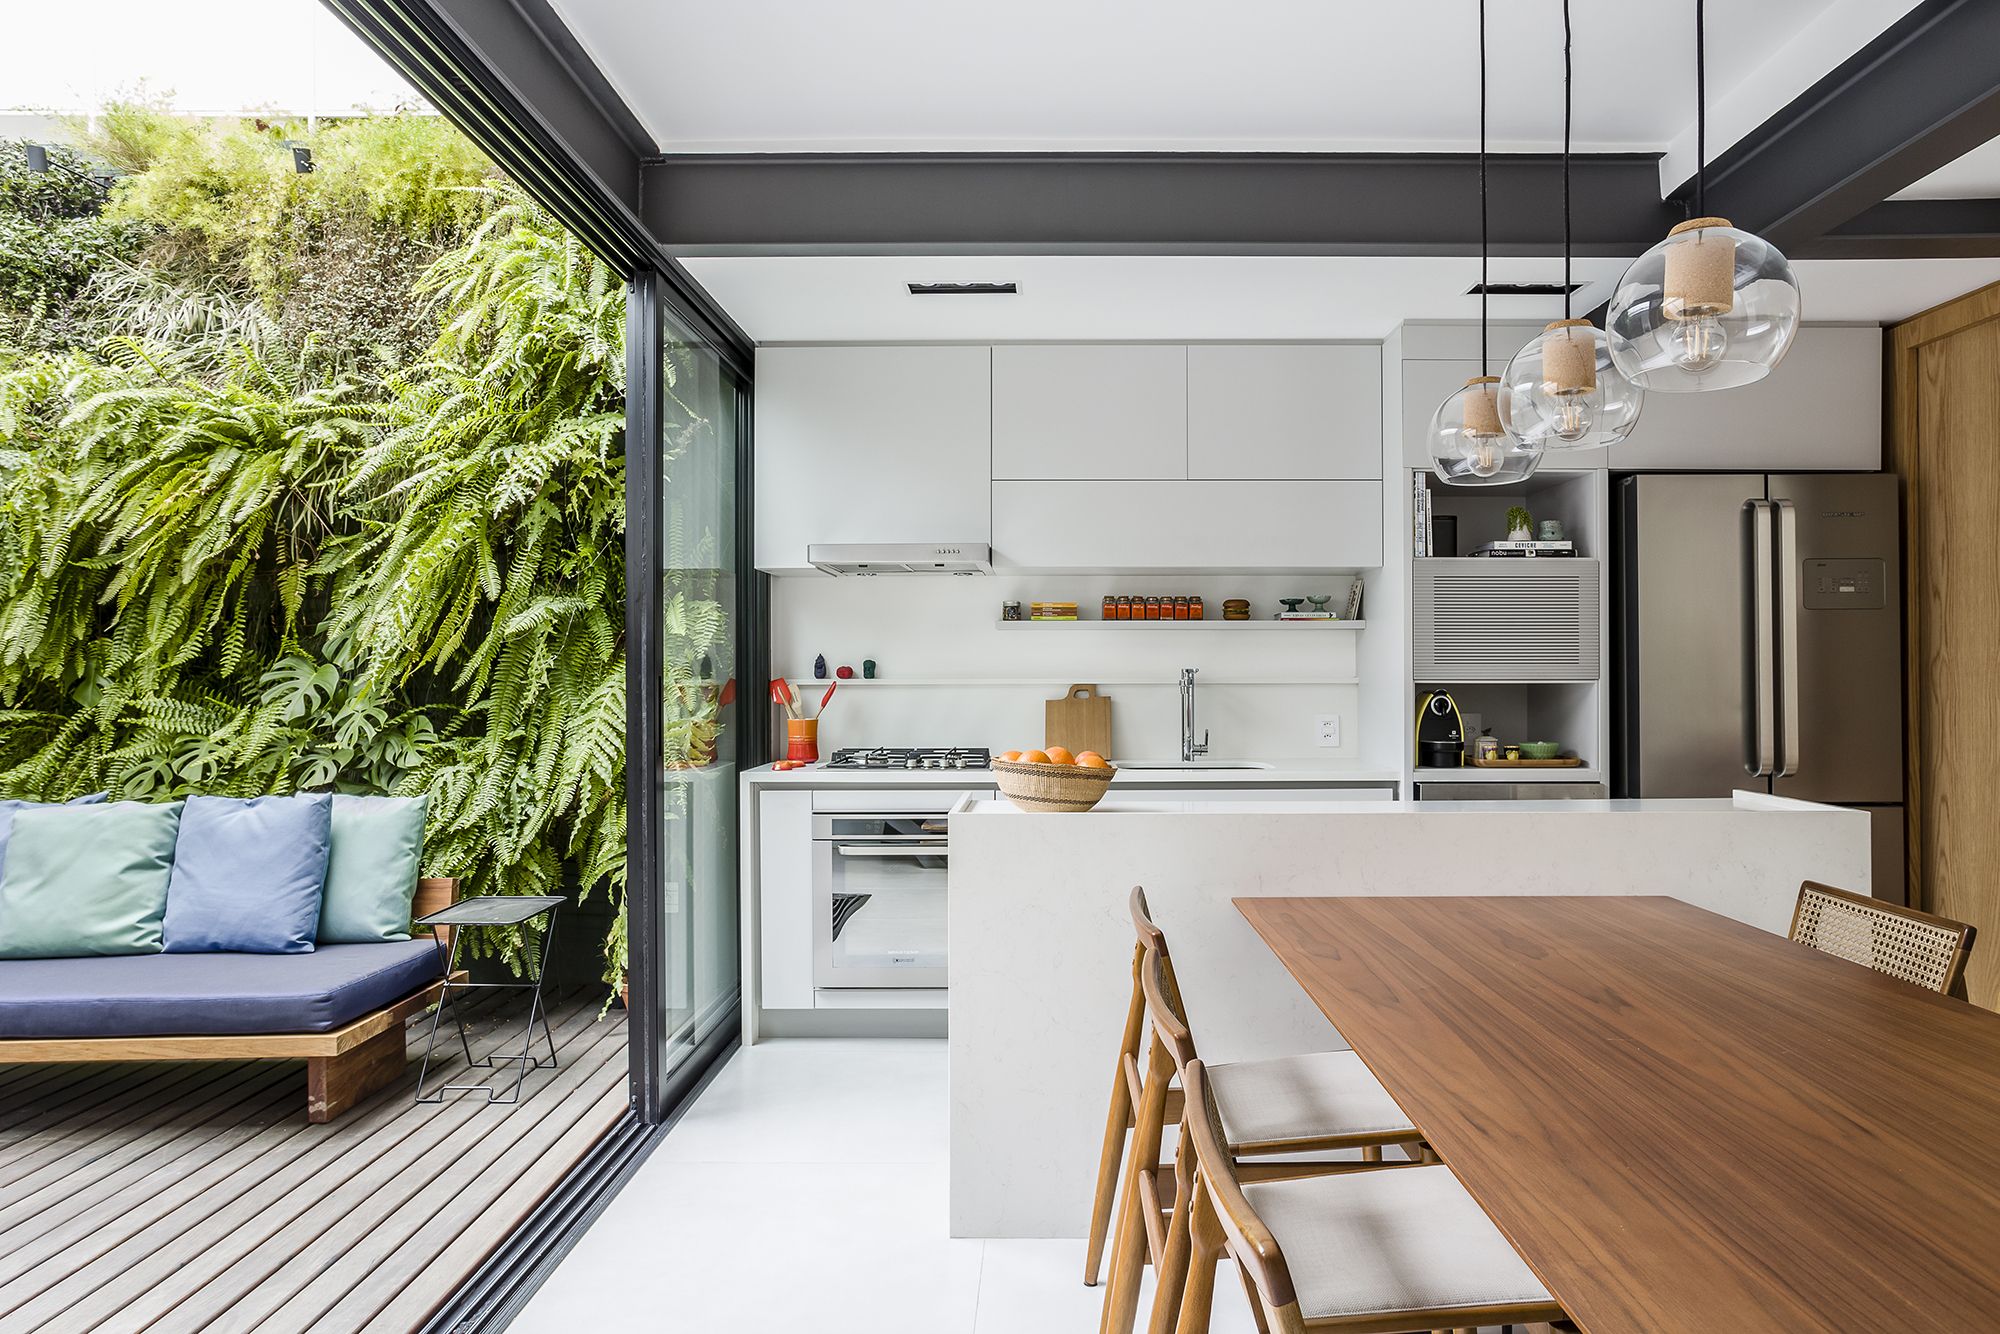 Una casa moderna con patio interior y espacios abiertos